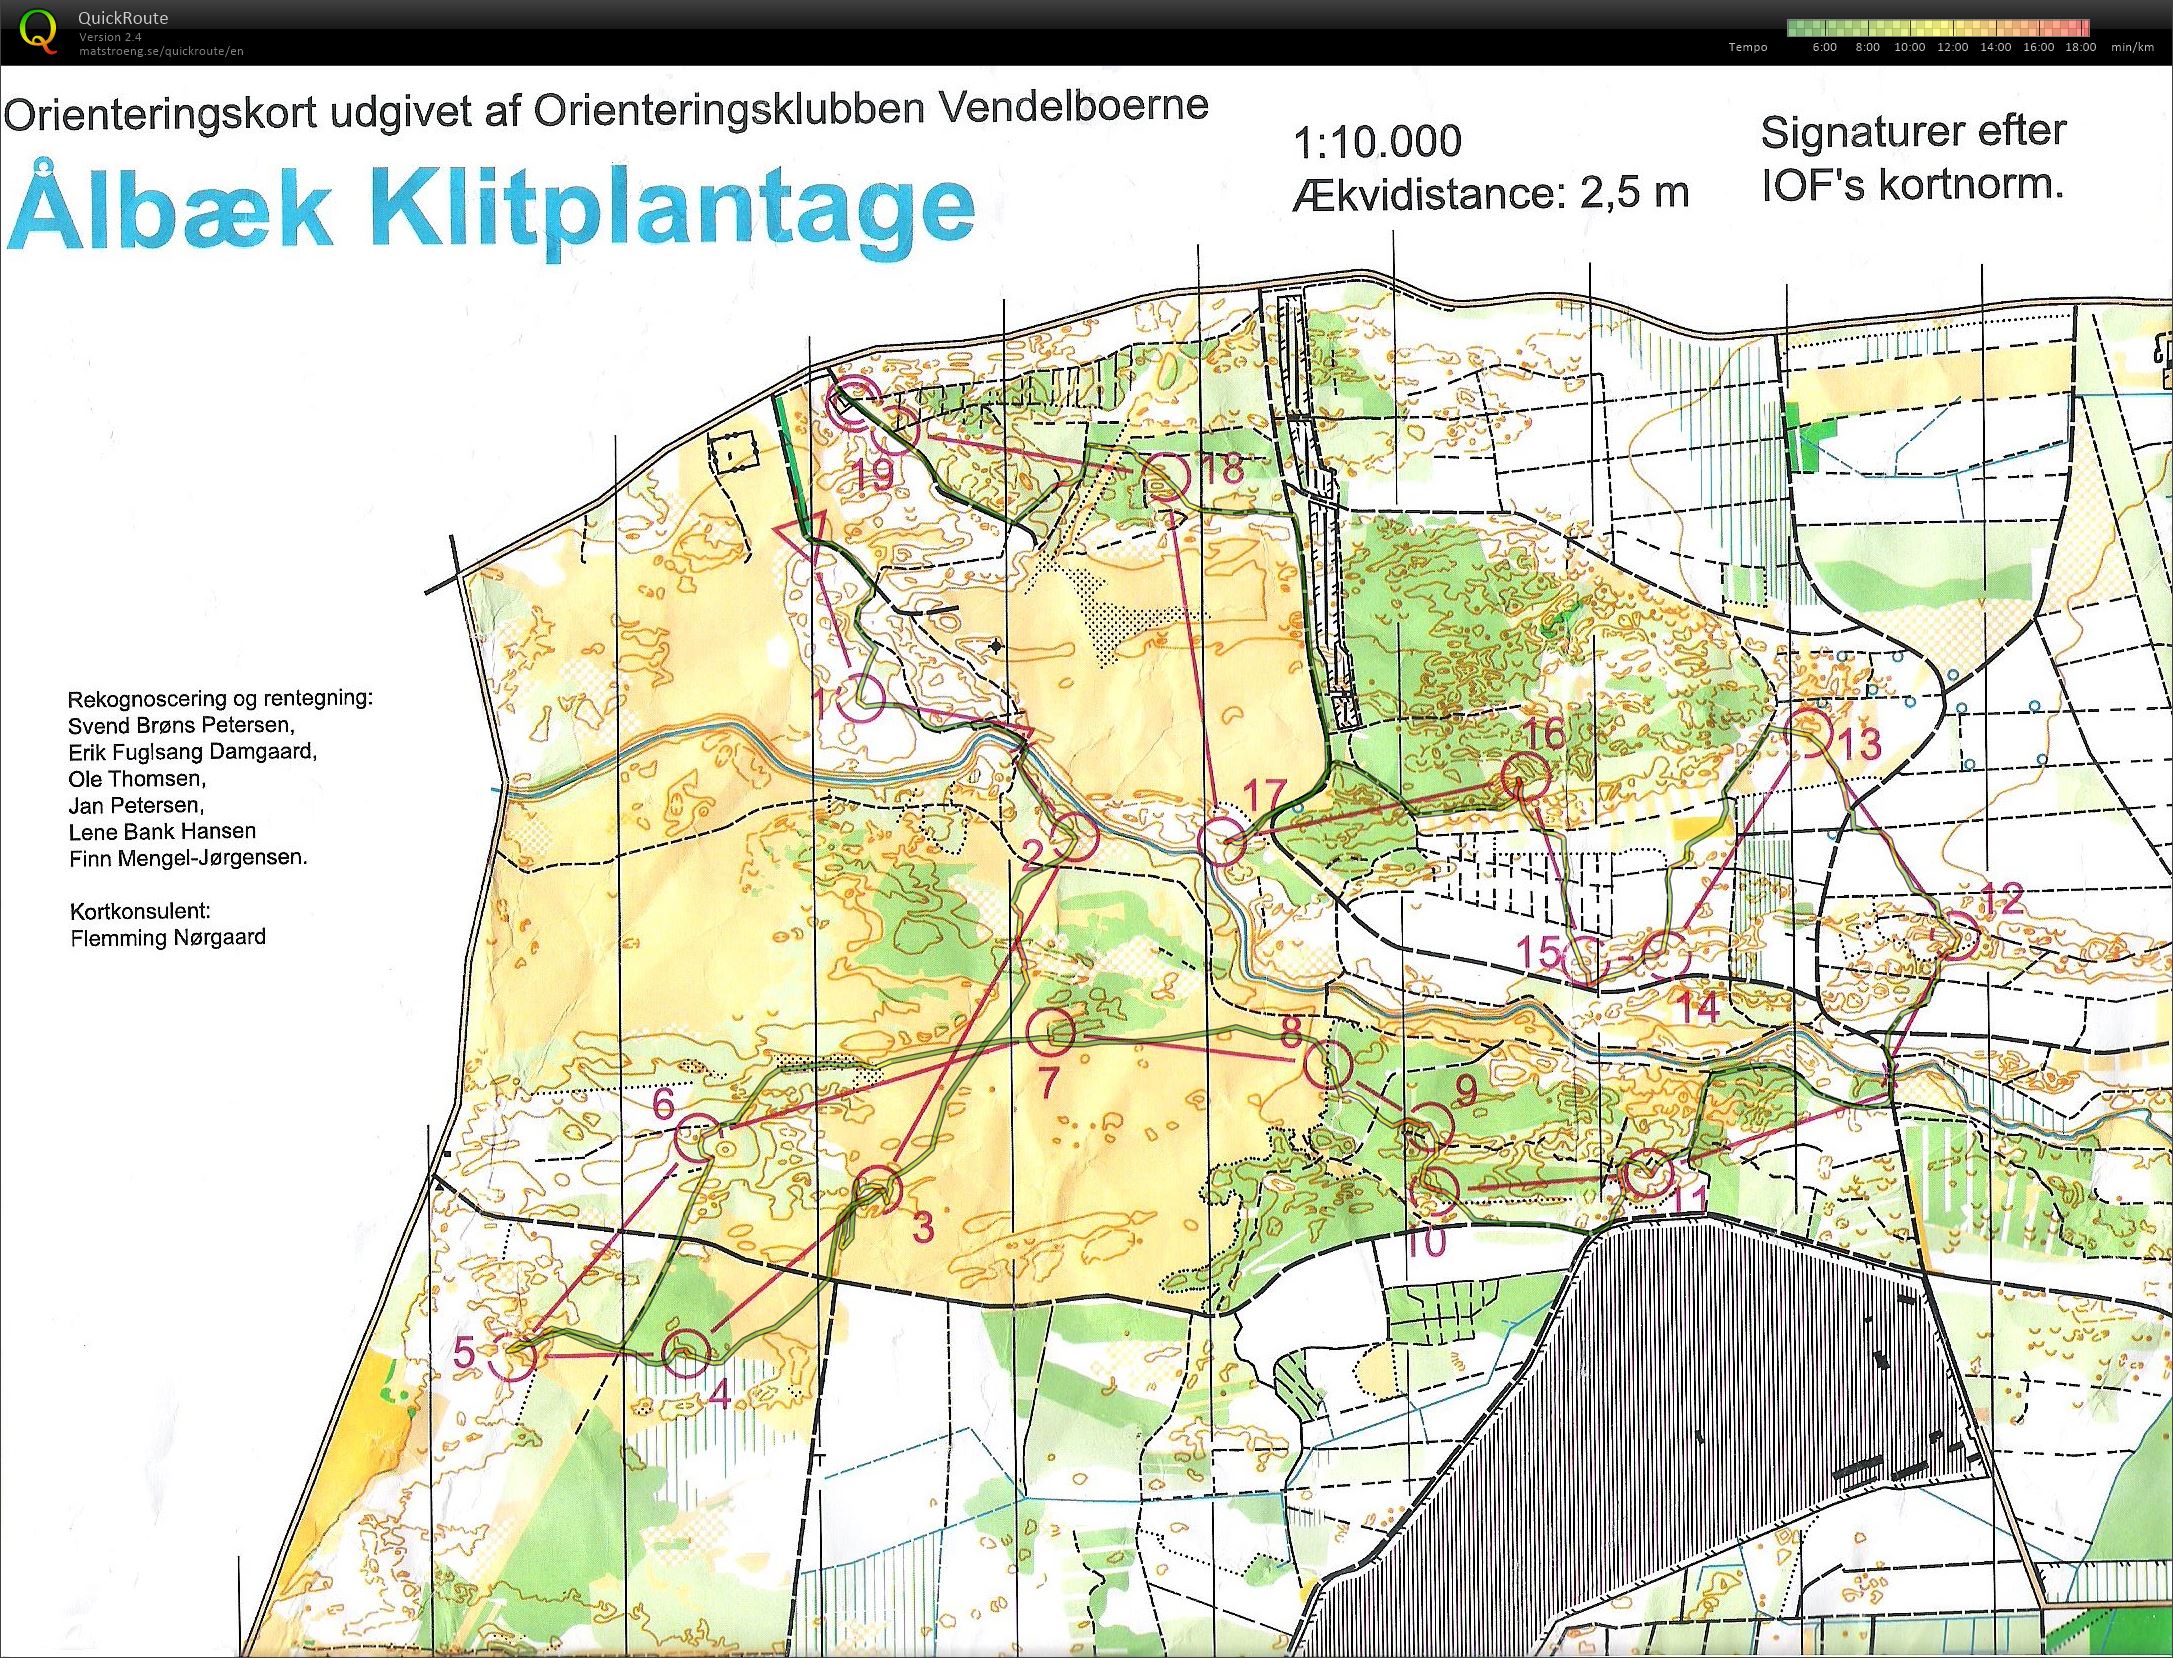 NJM Natløb Ålbæk Klitplantage - H45 - 6.2 km. (24/09/2014)